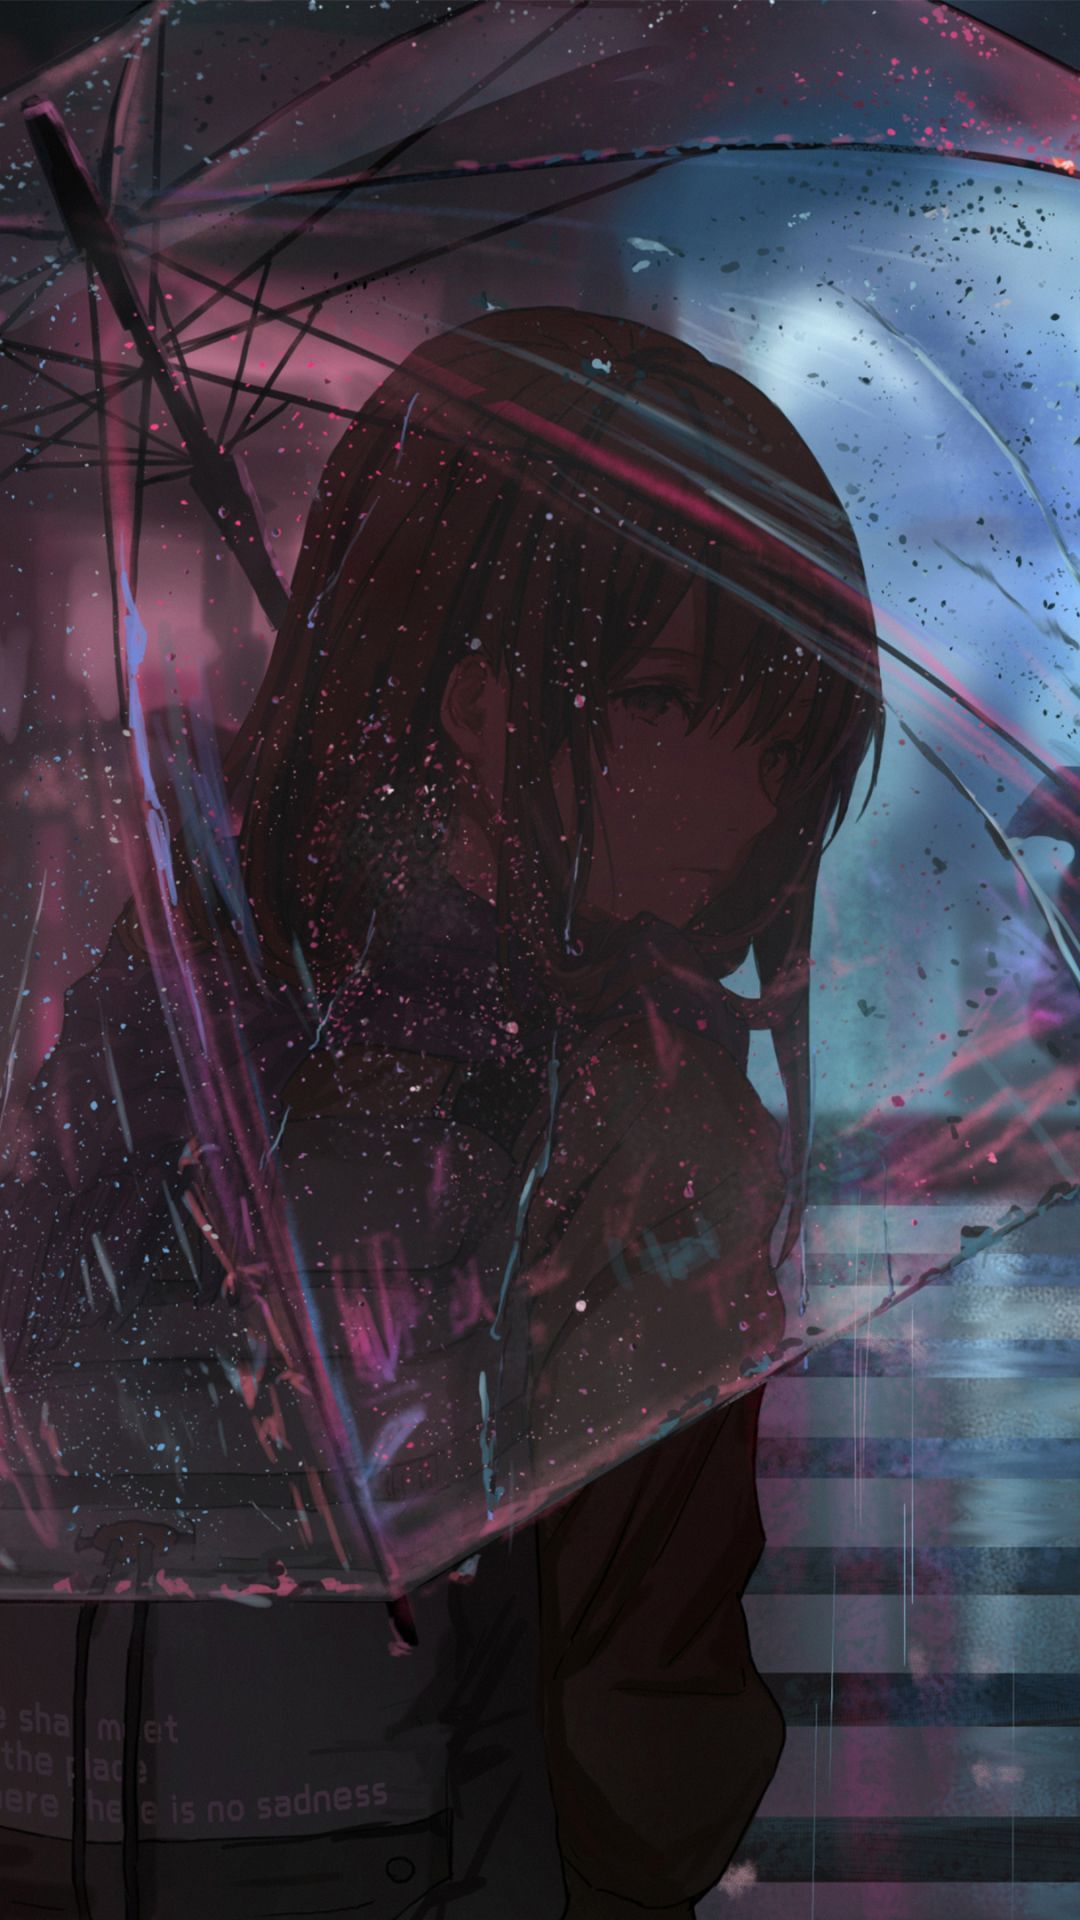 Anime Girl (1080x1920) Wallpaper